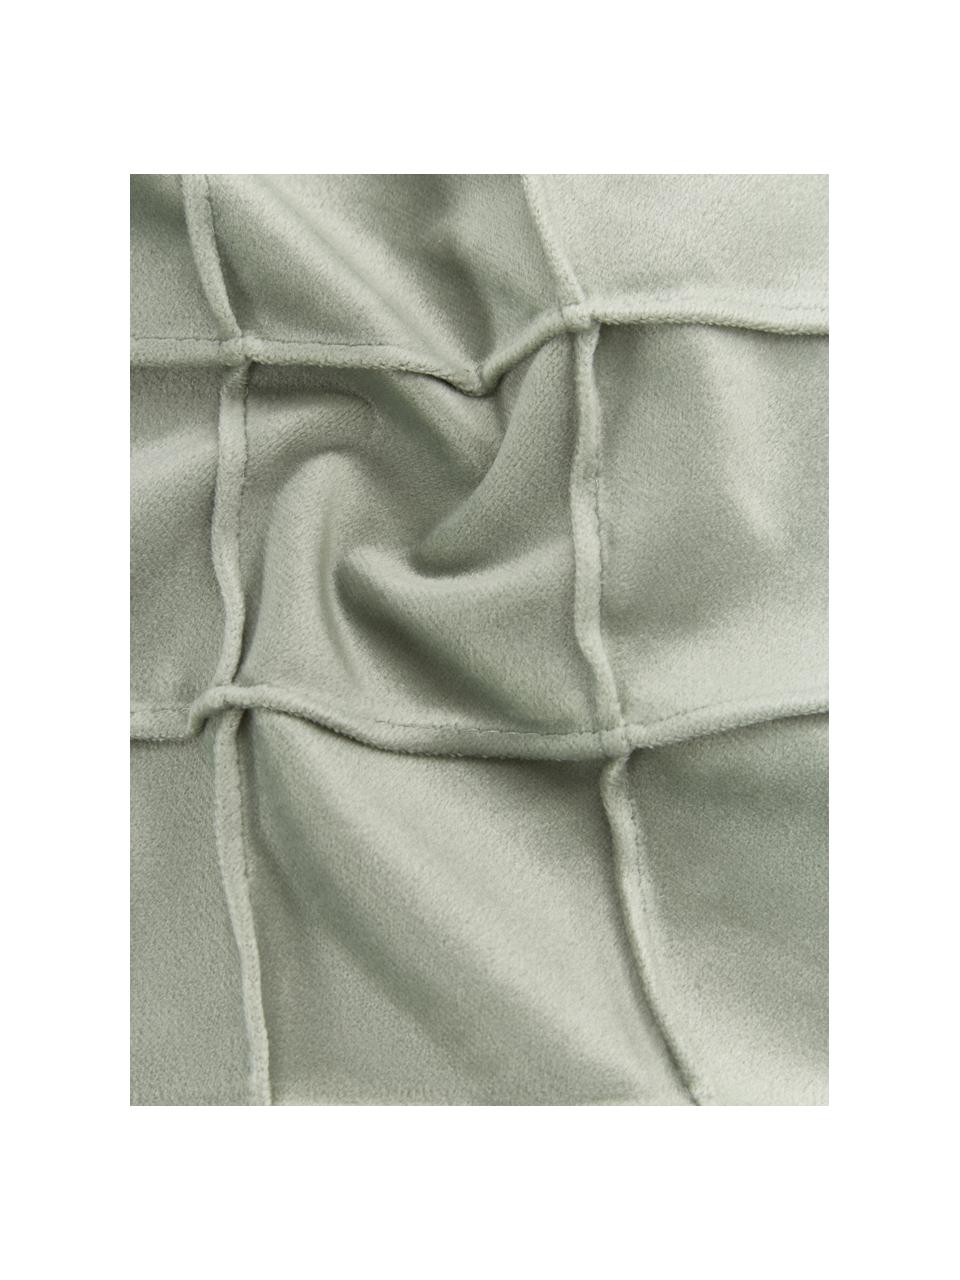 Fluwelen kussenhoes Luka in saliegroen met structuur-ruitpatroon, Fluweel (100% polyester), Saliegroen, B 50 x L 50 cm